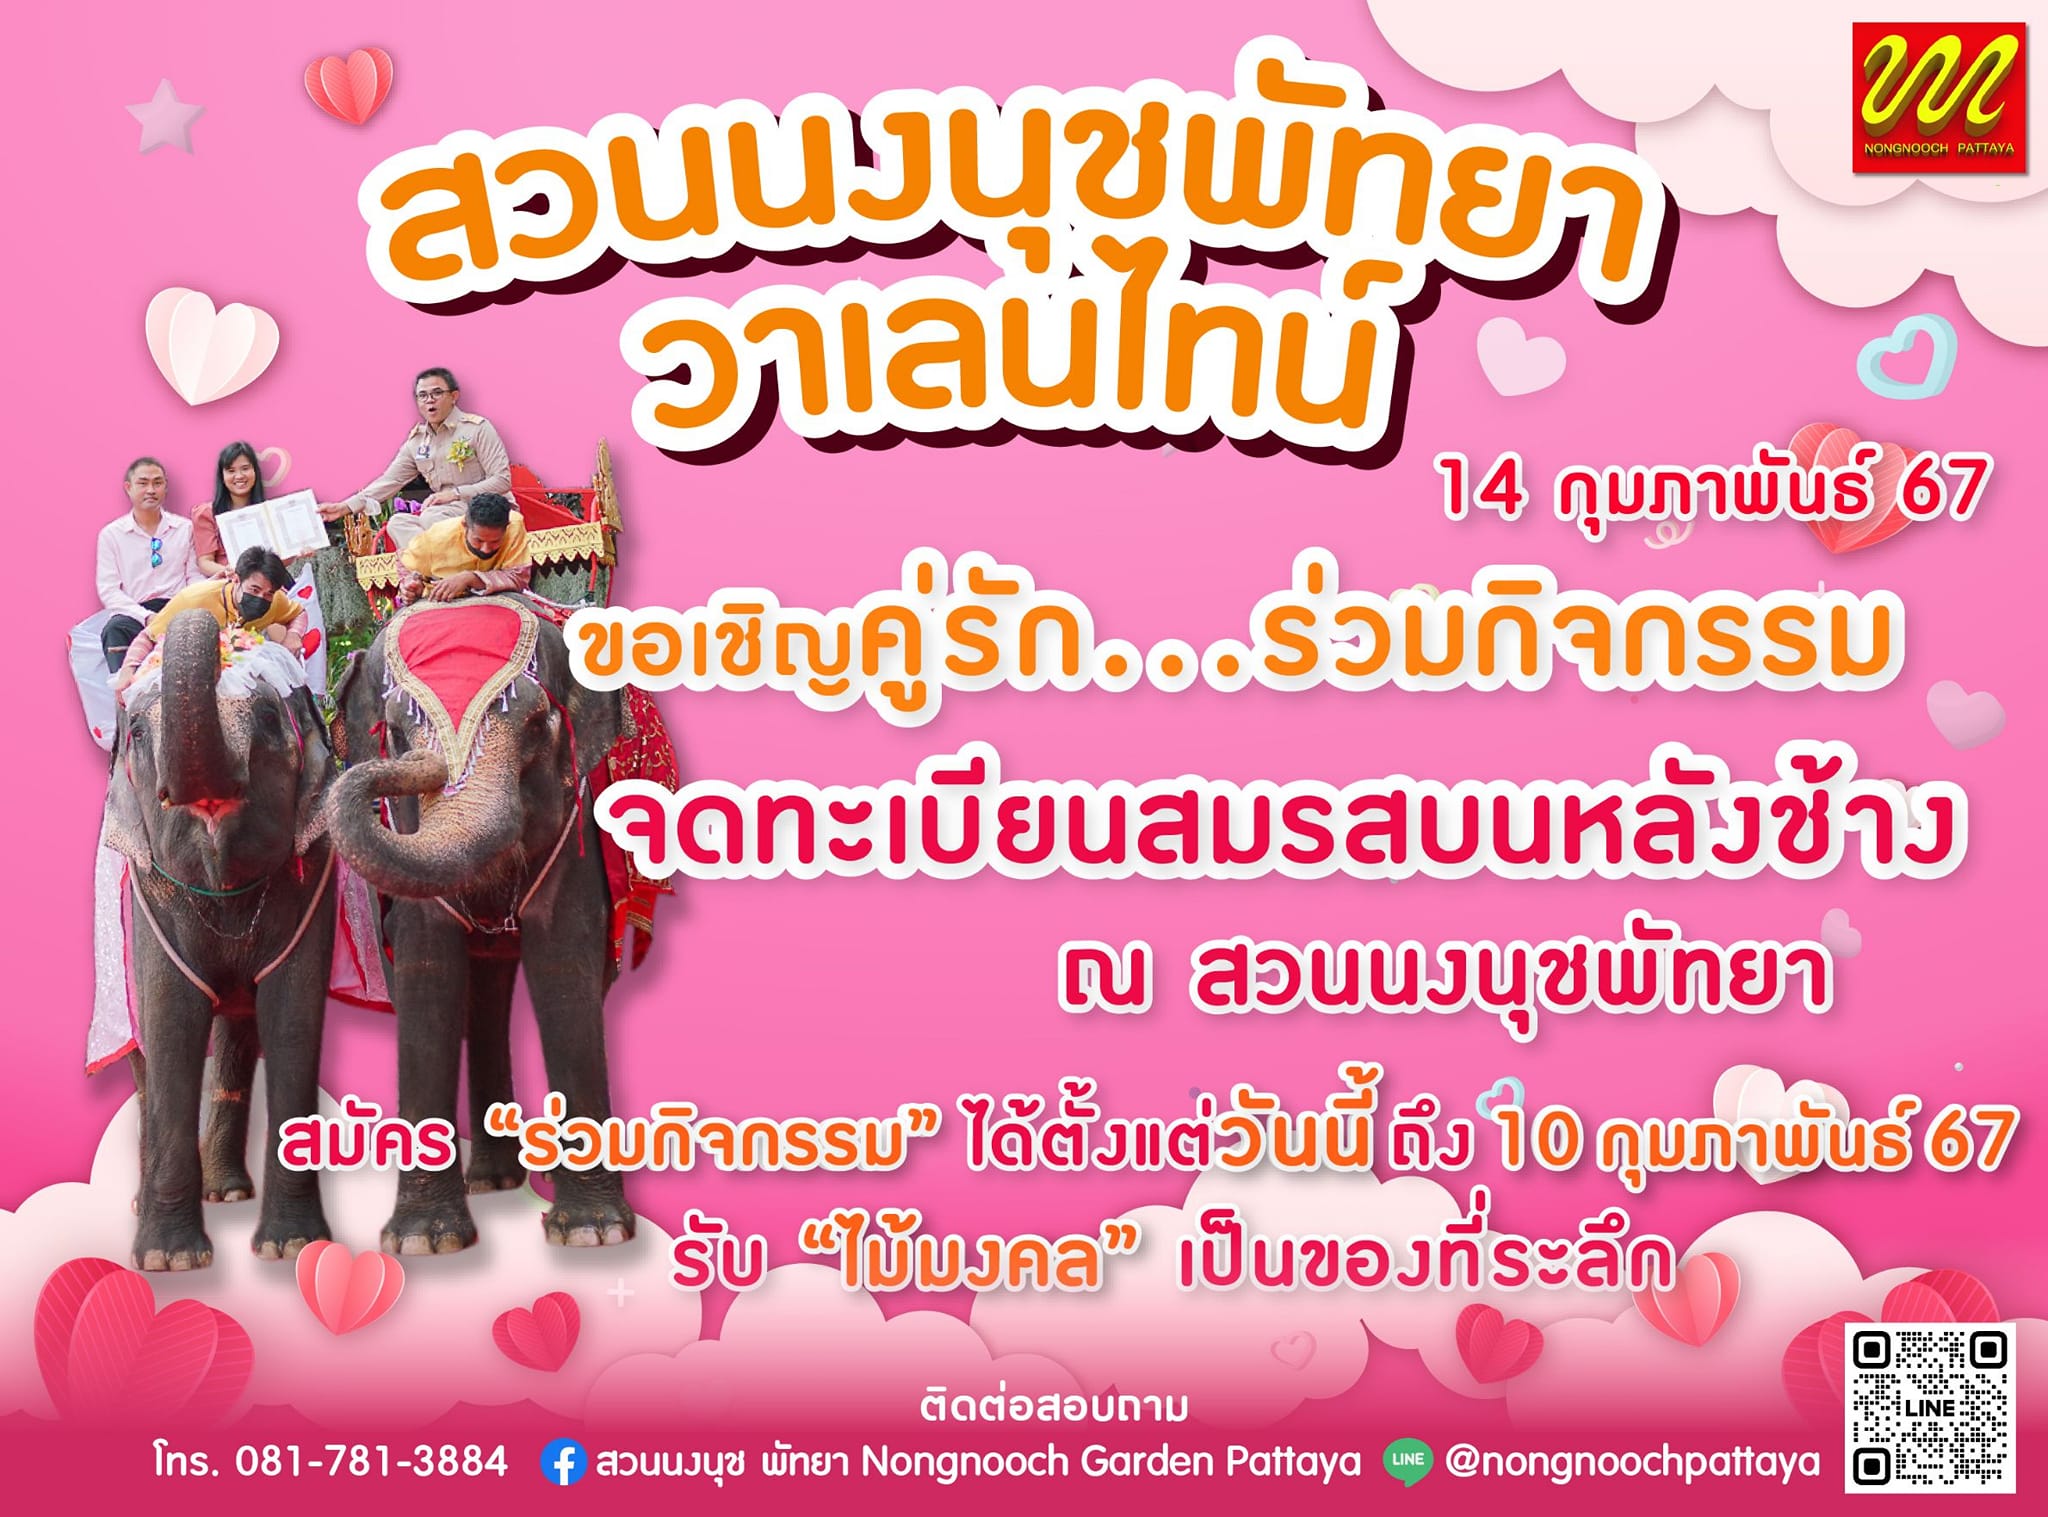 CNY & Valentine promotions